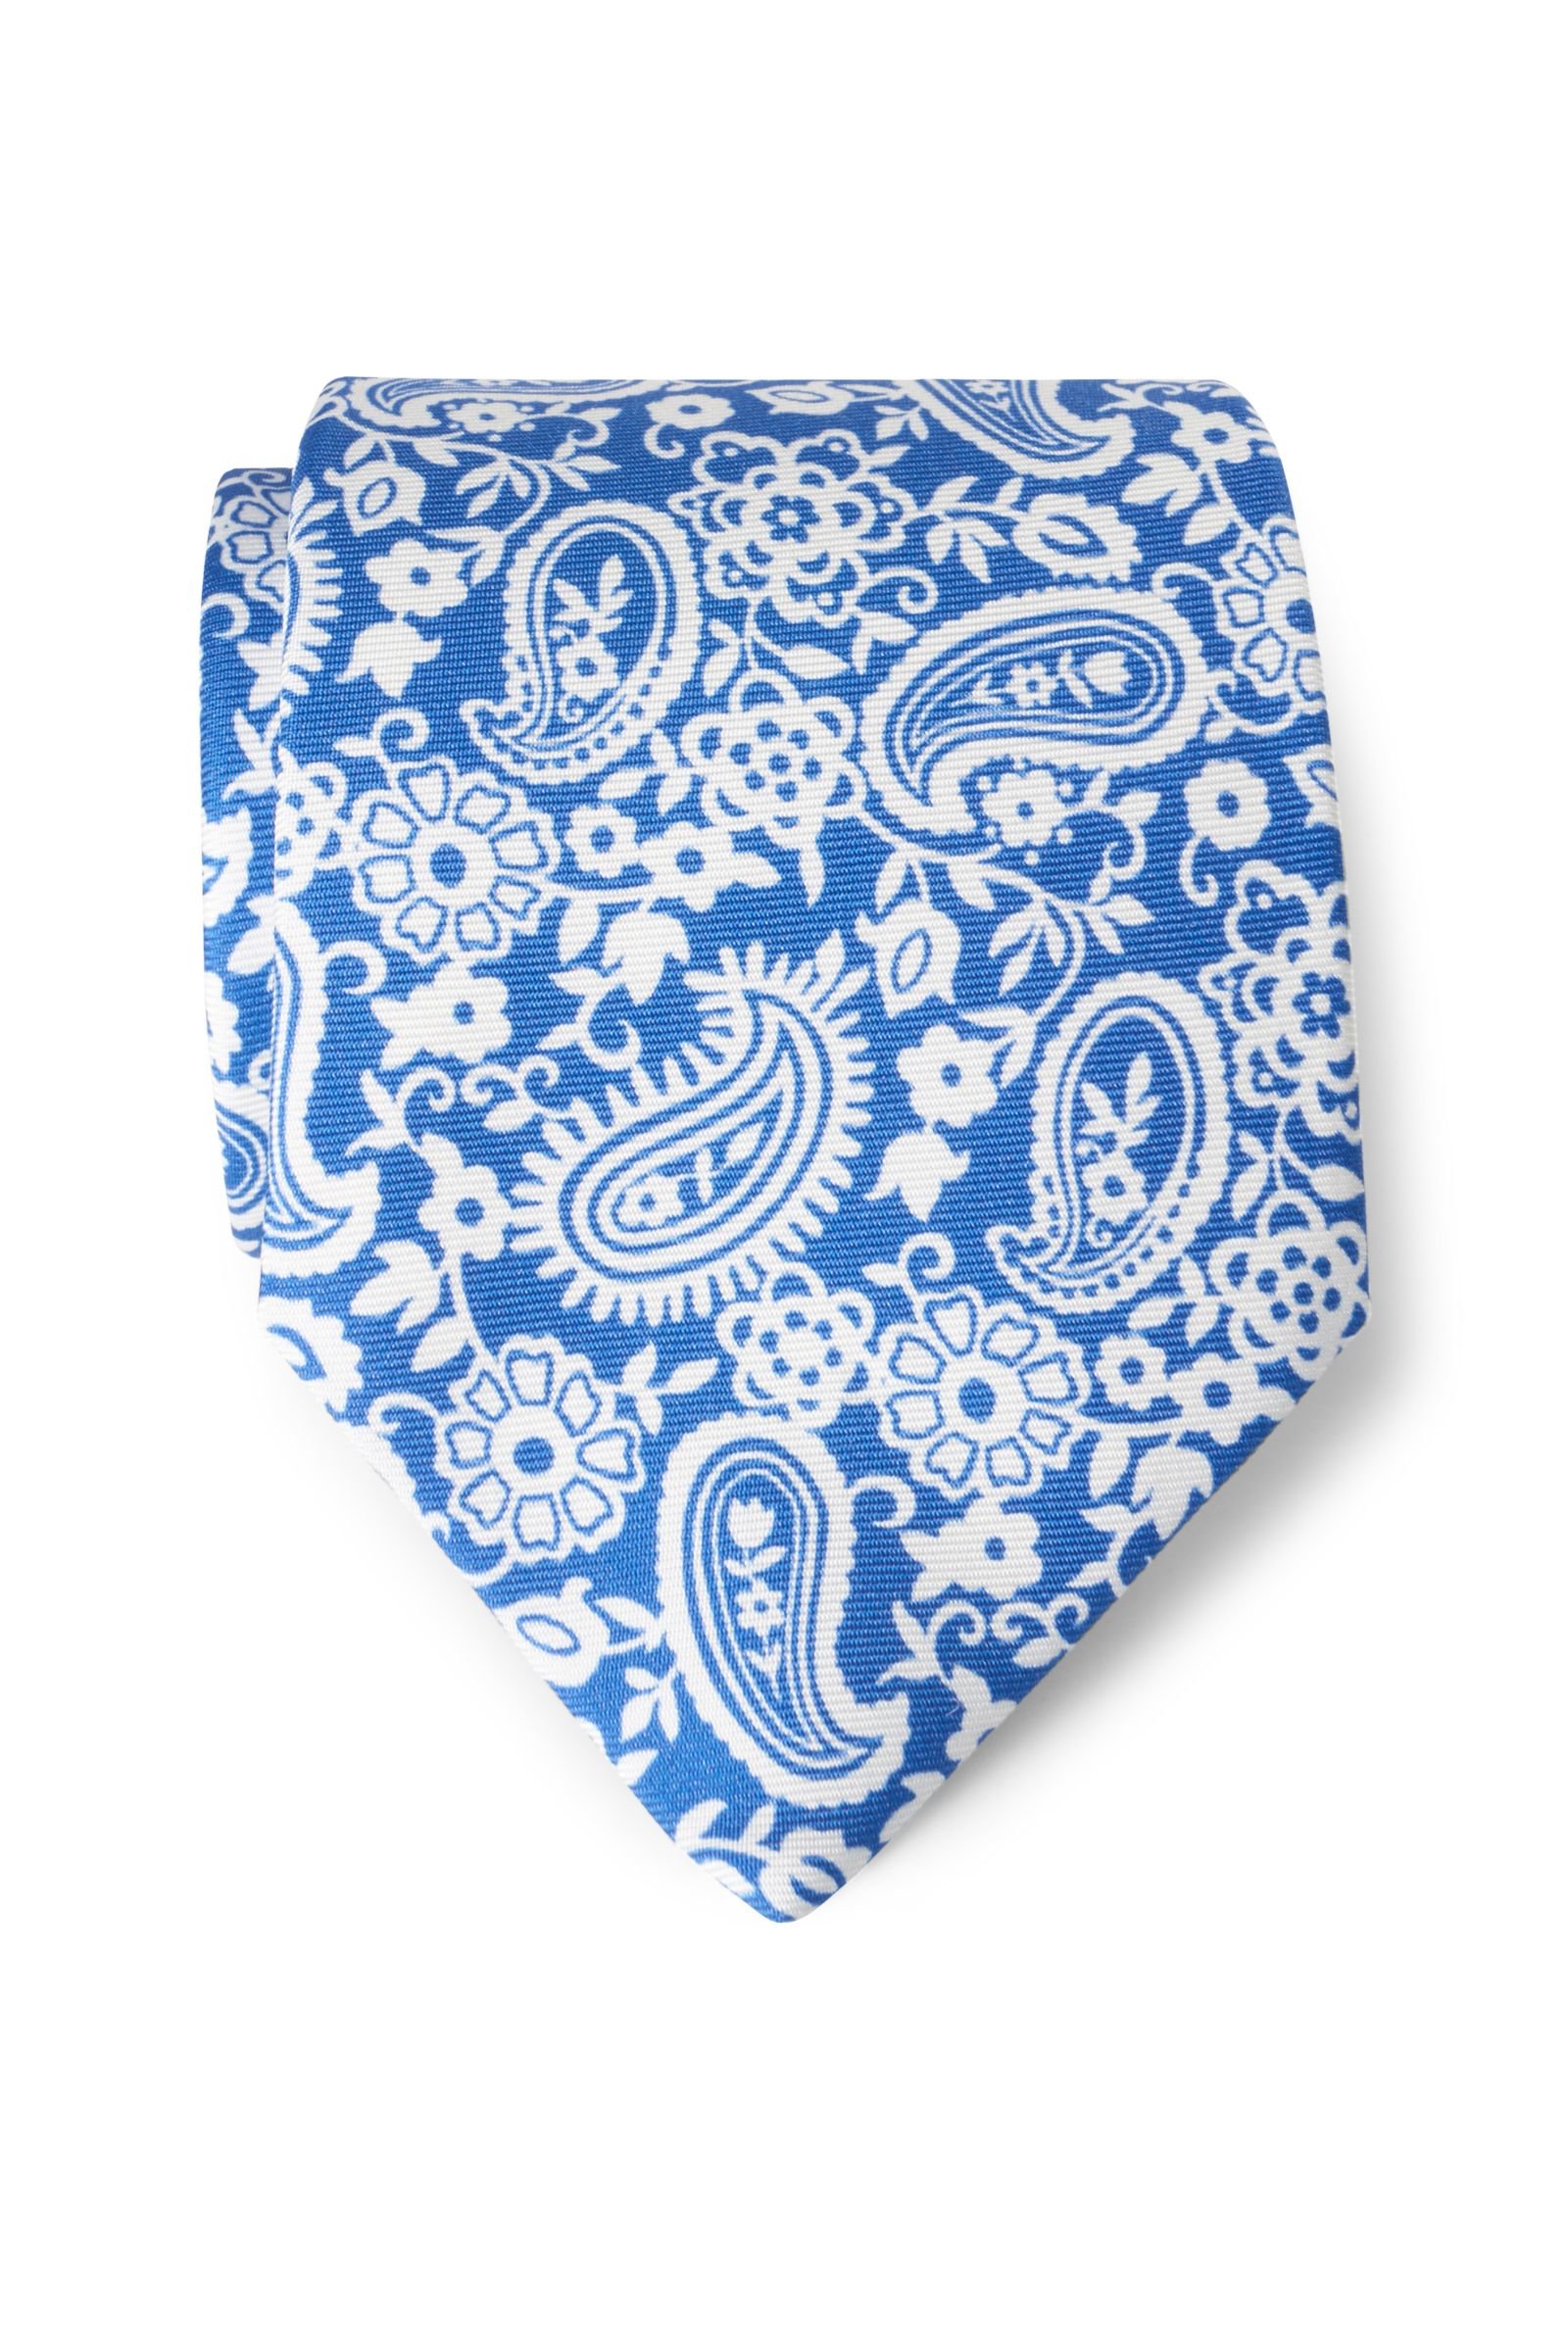 Silk tie blue patterned